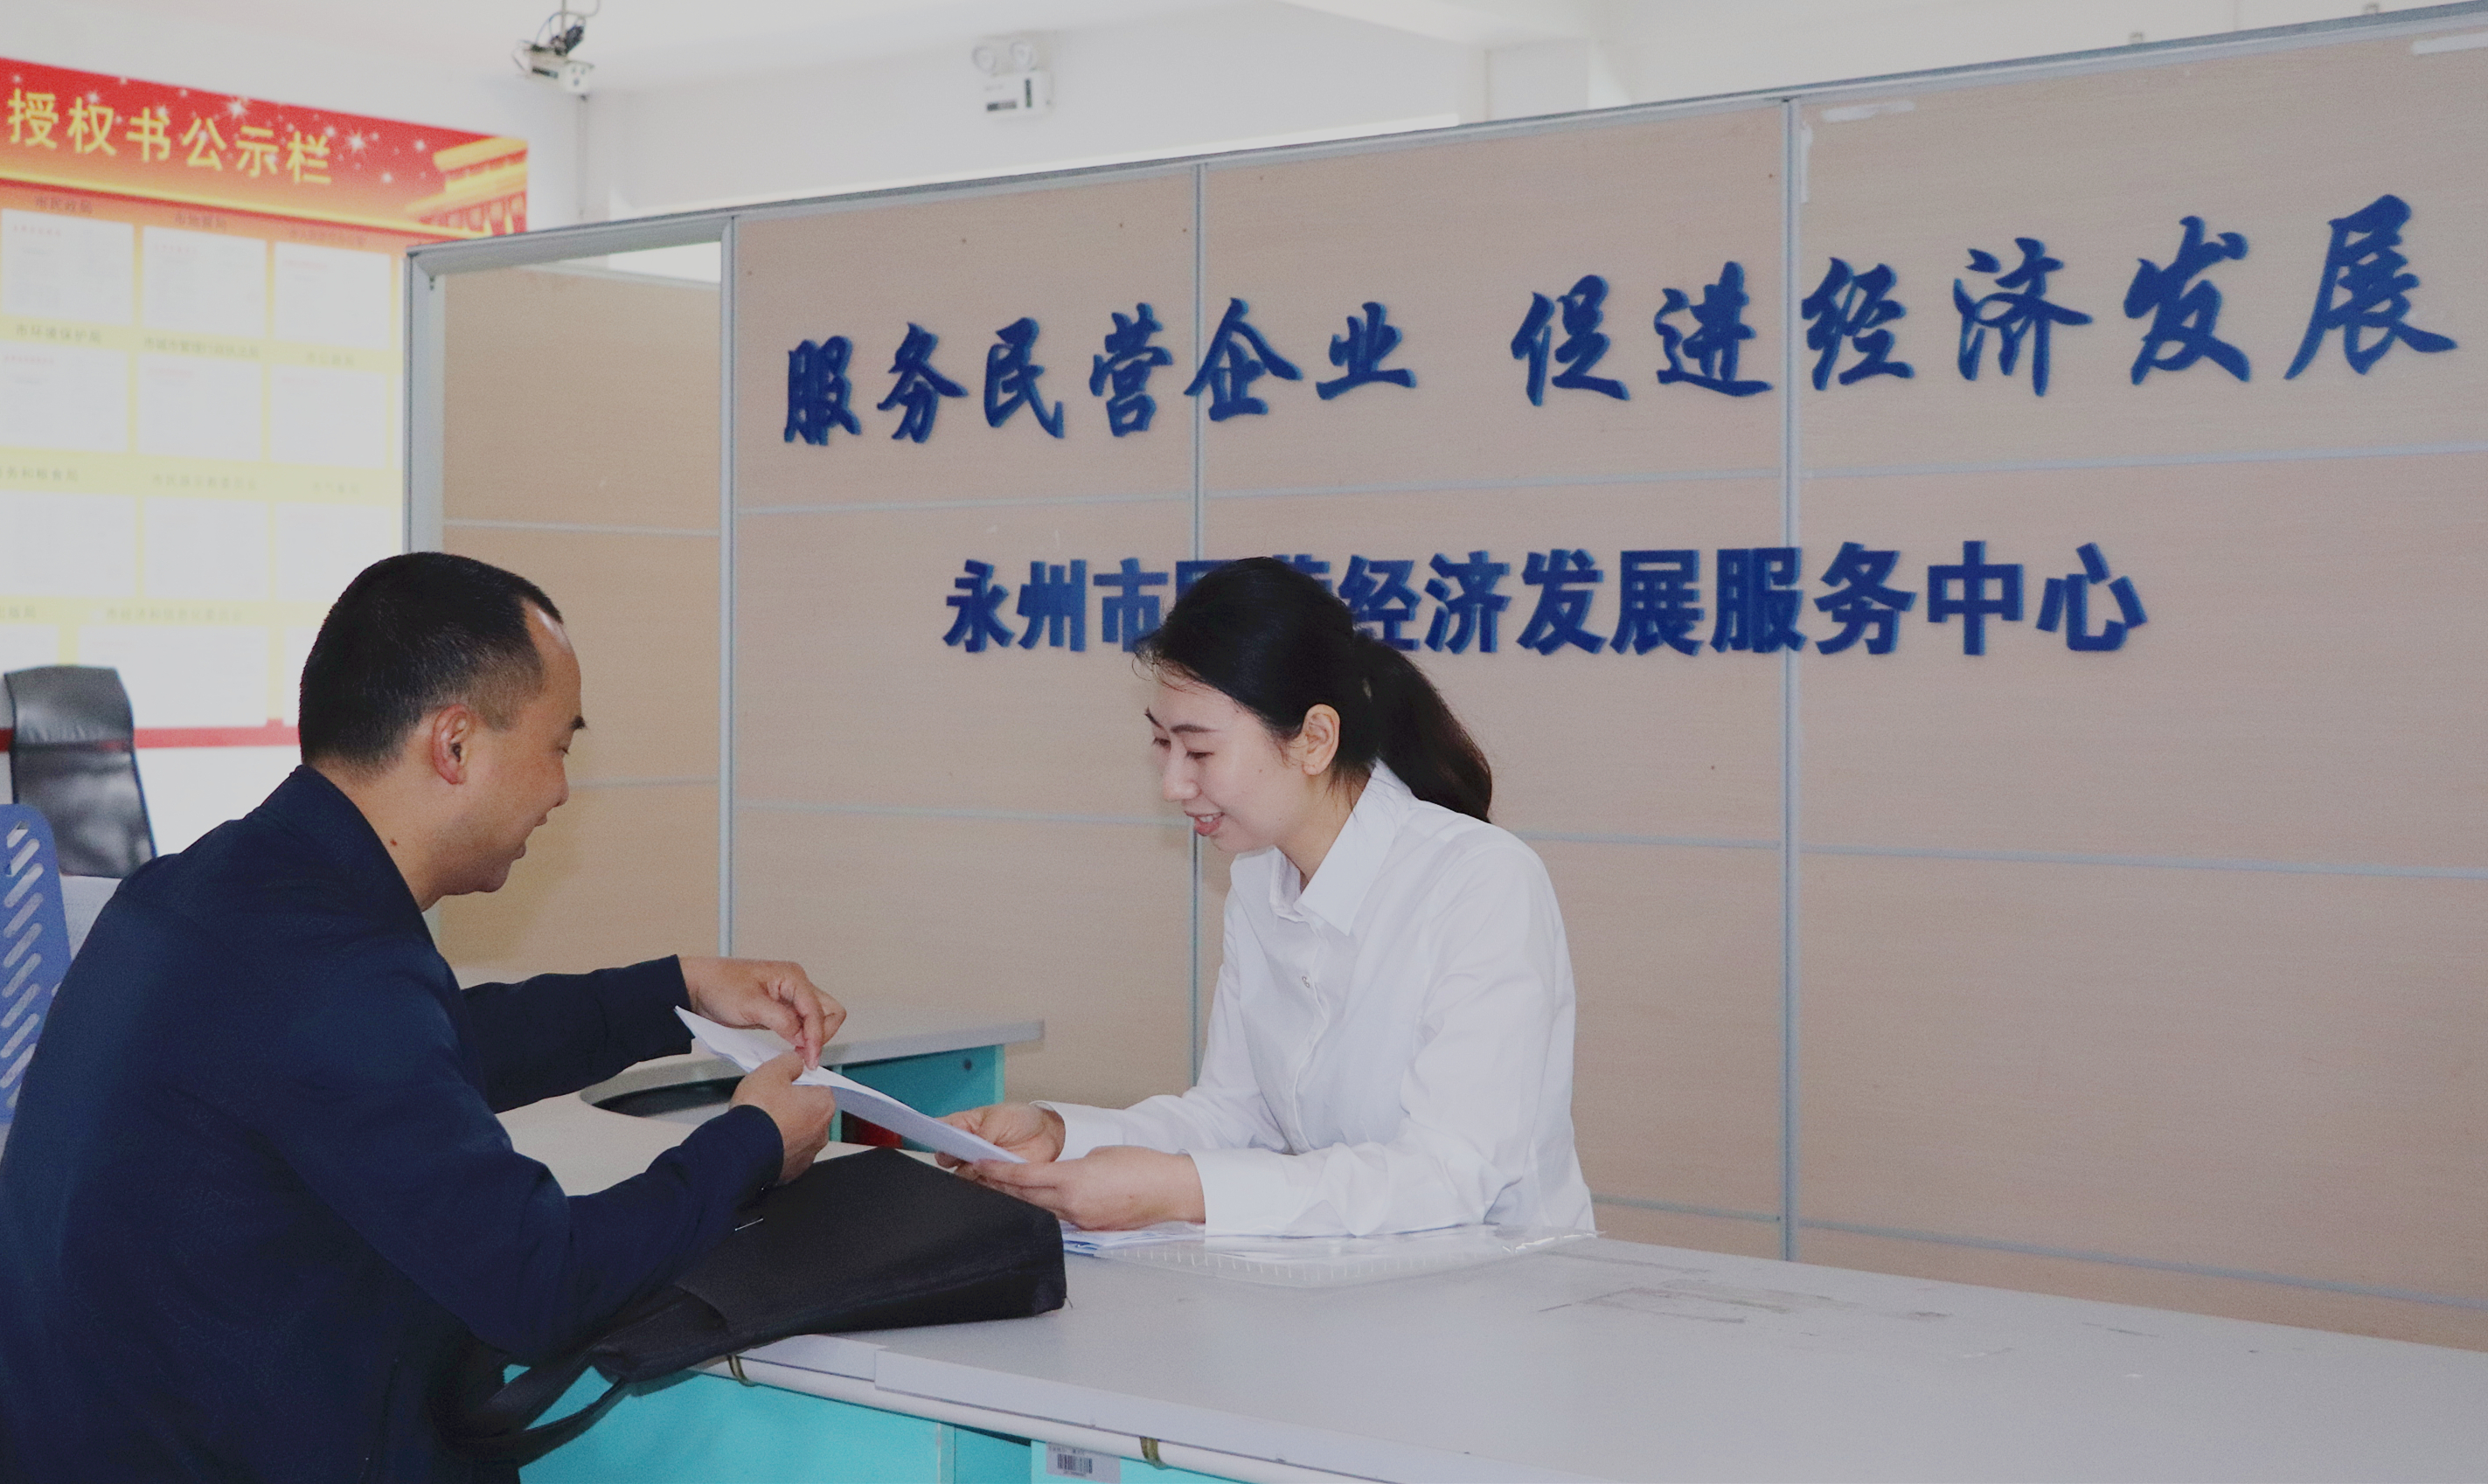 4月29日上午,永州市民营经济发展服务中心正式挂牌成立